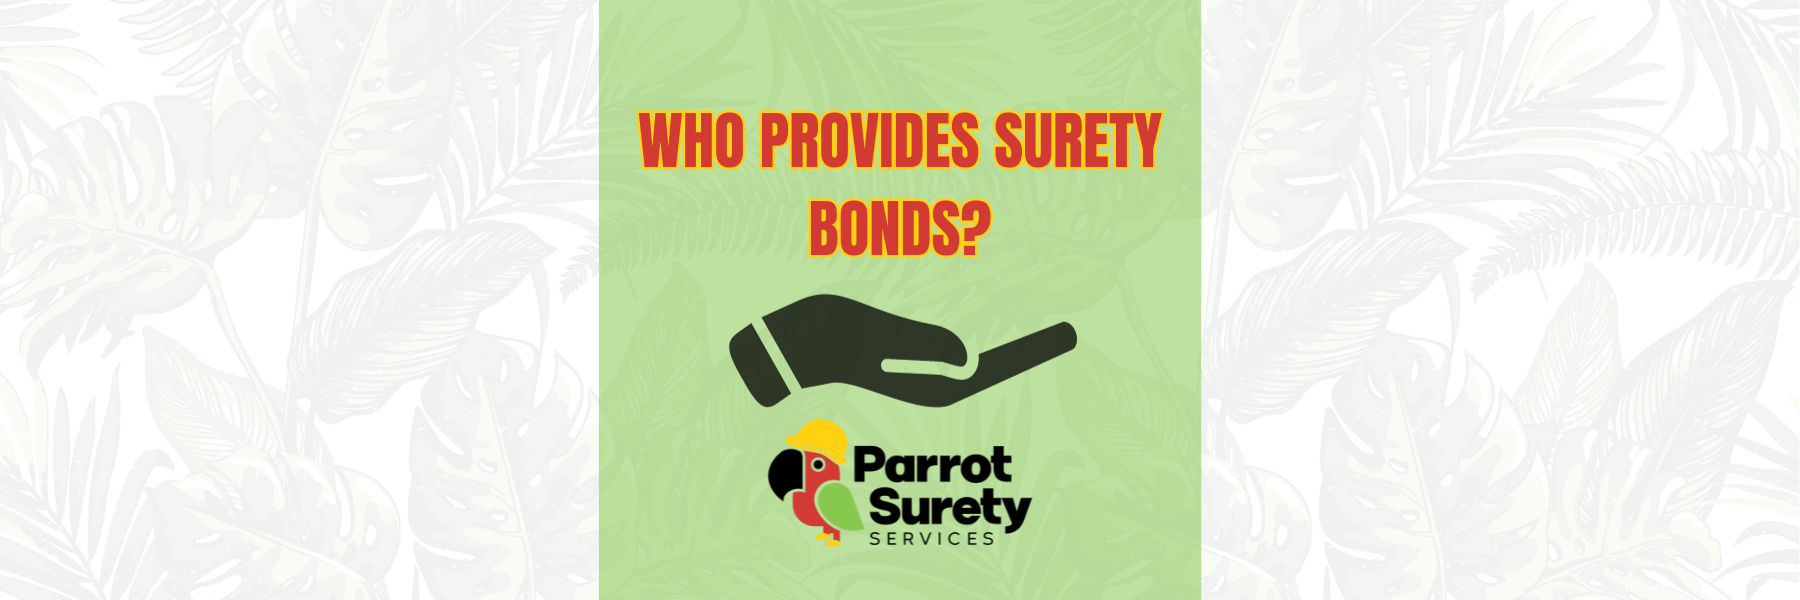 Who Provides Surety Bonds? title image parrot surety services